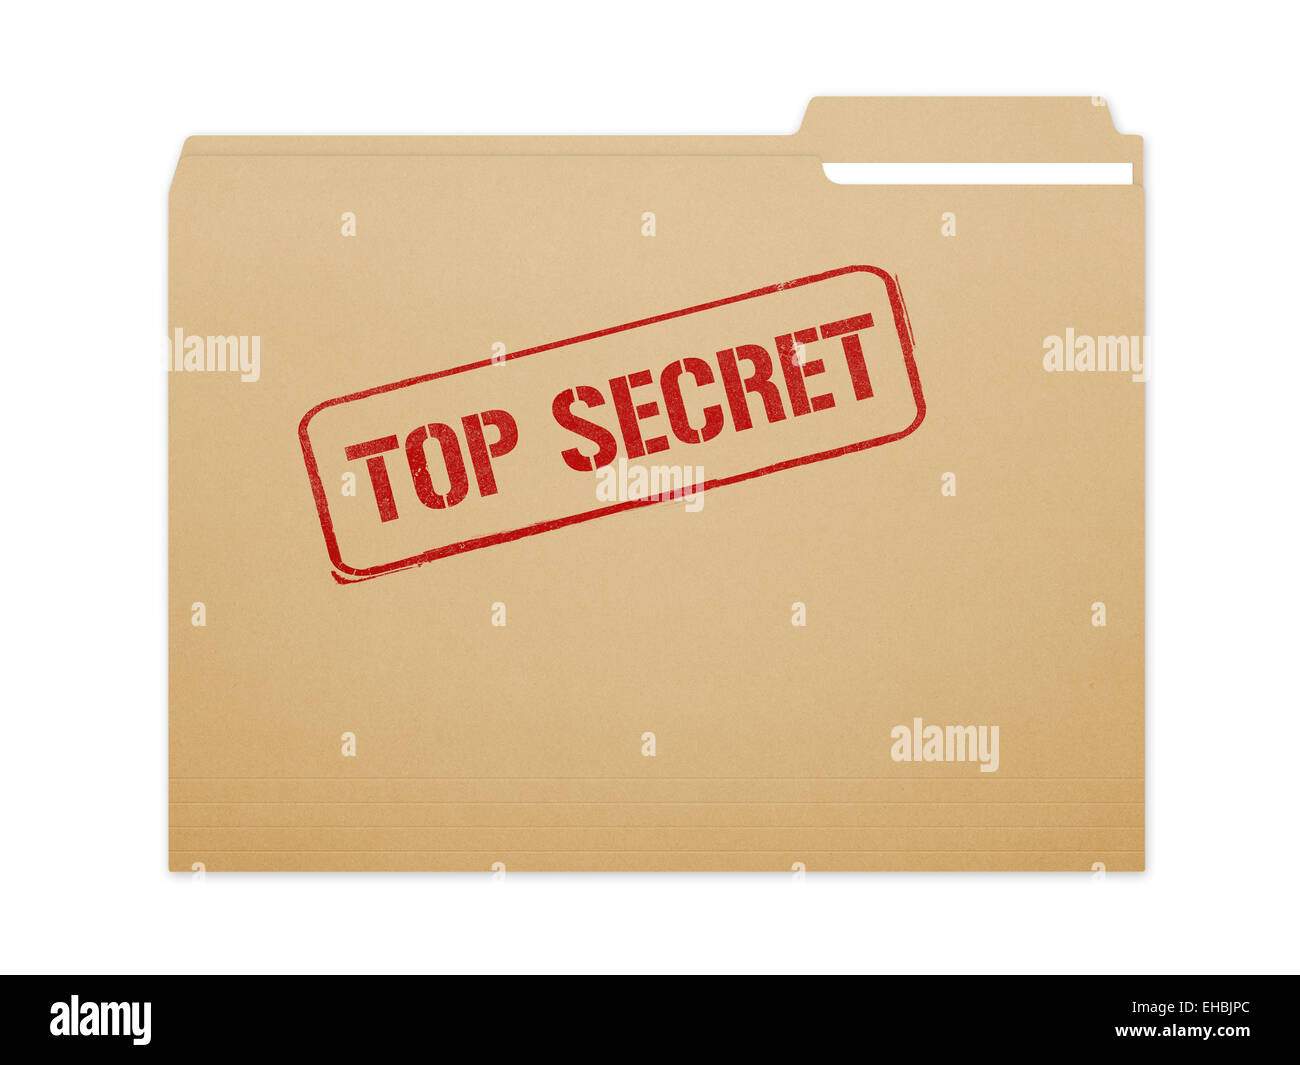 Top Secret archivo carpeta marrón con papel mostrando con un montón de espacio de copia. Aislado en un fondo blanco con trazado de recorte. Foto de stock